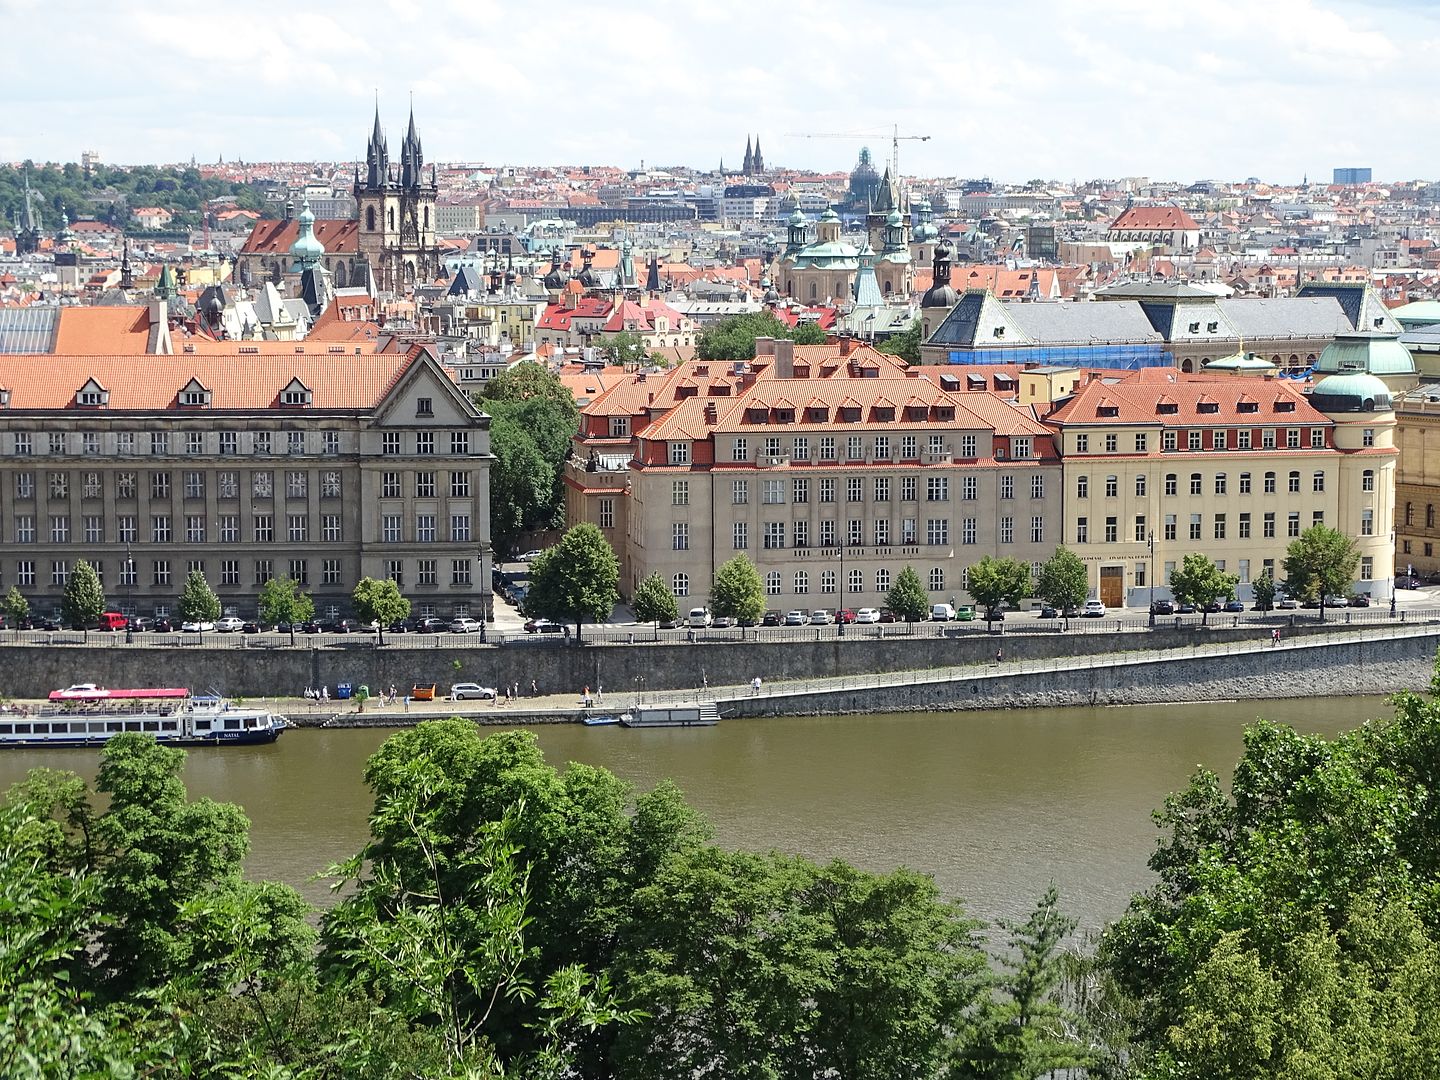 7 días en Praga con escursiones a Dresde (Alemania),Karlovy Vary y Terezin (E.C) - Blogs of Czech Republic - Día 3: Viernes 1 de Julio de 2016 (28)